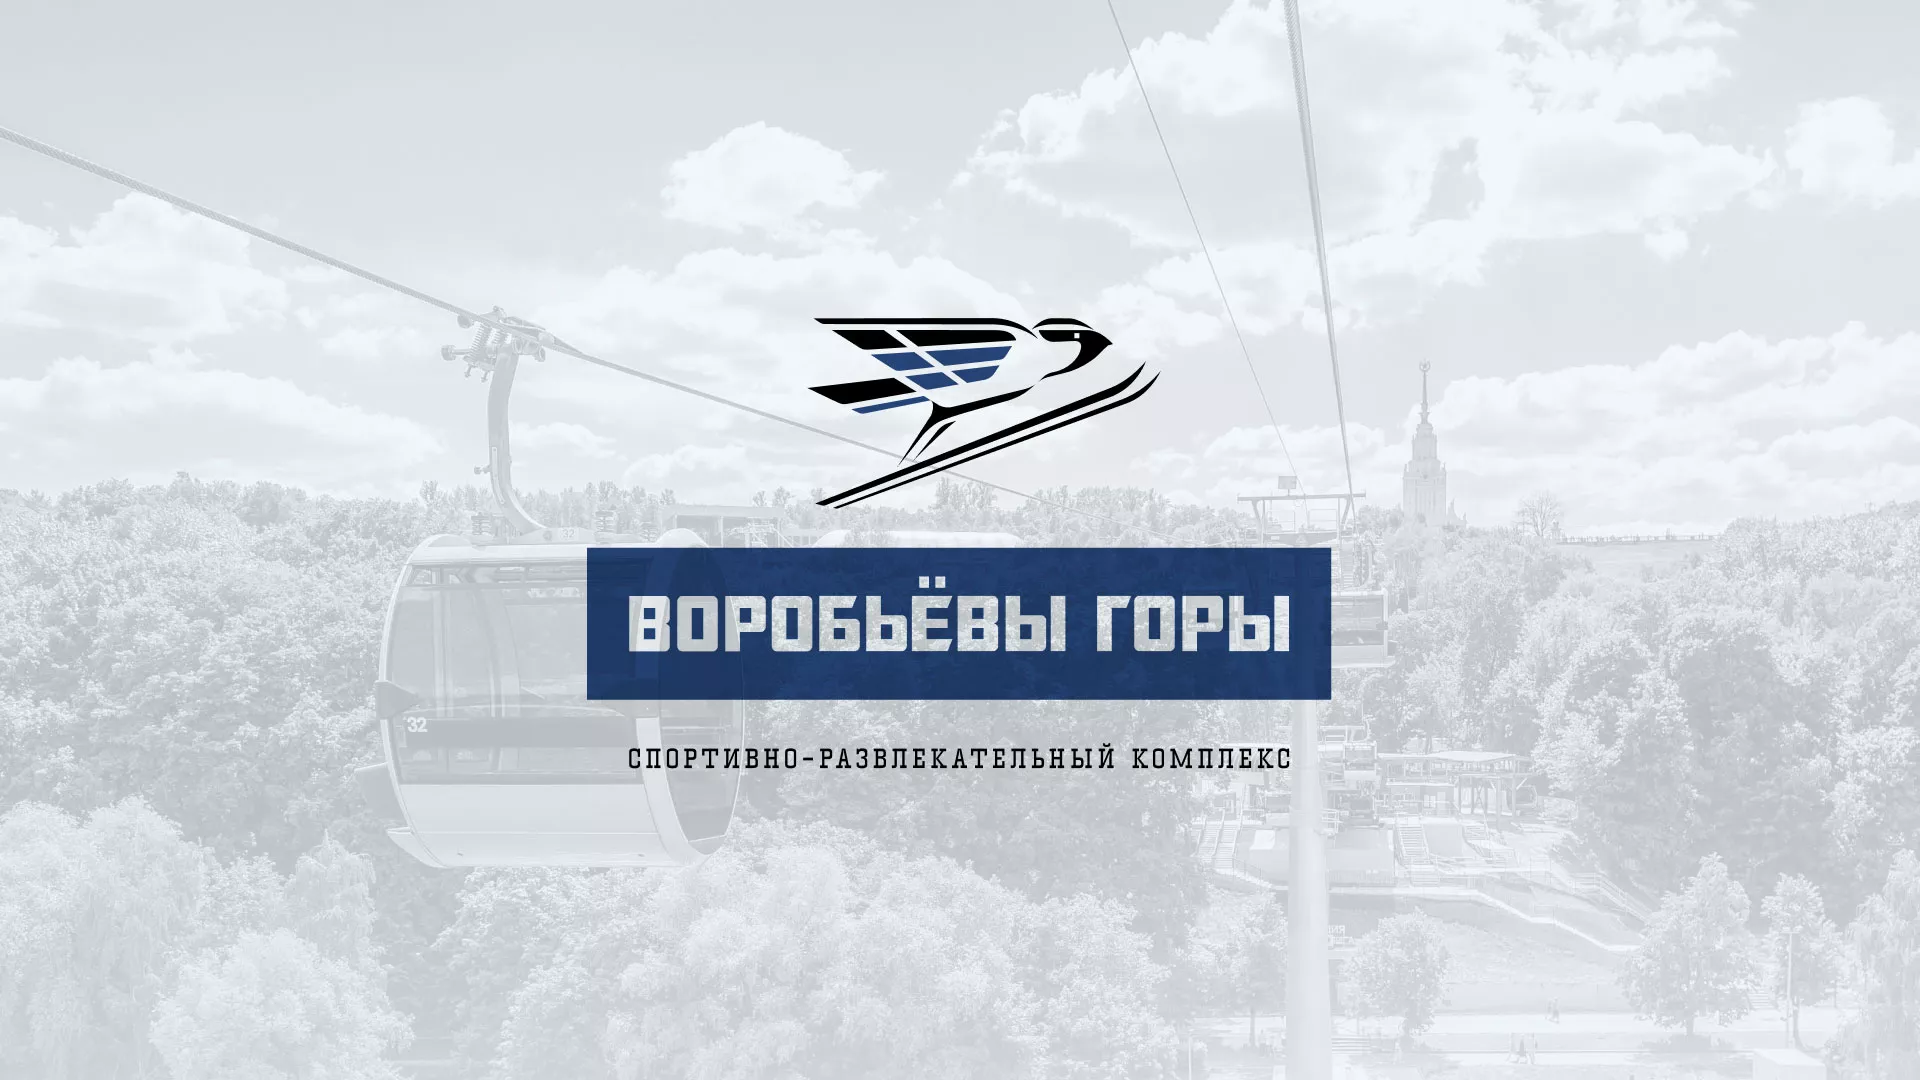 Разработка сайта в Сыктывкаре для спортивно-развлекательного комплекса «Воробьёвы горы»